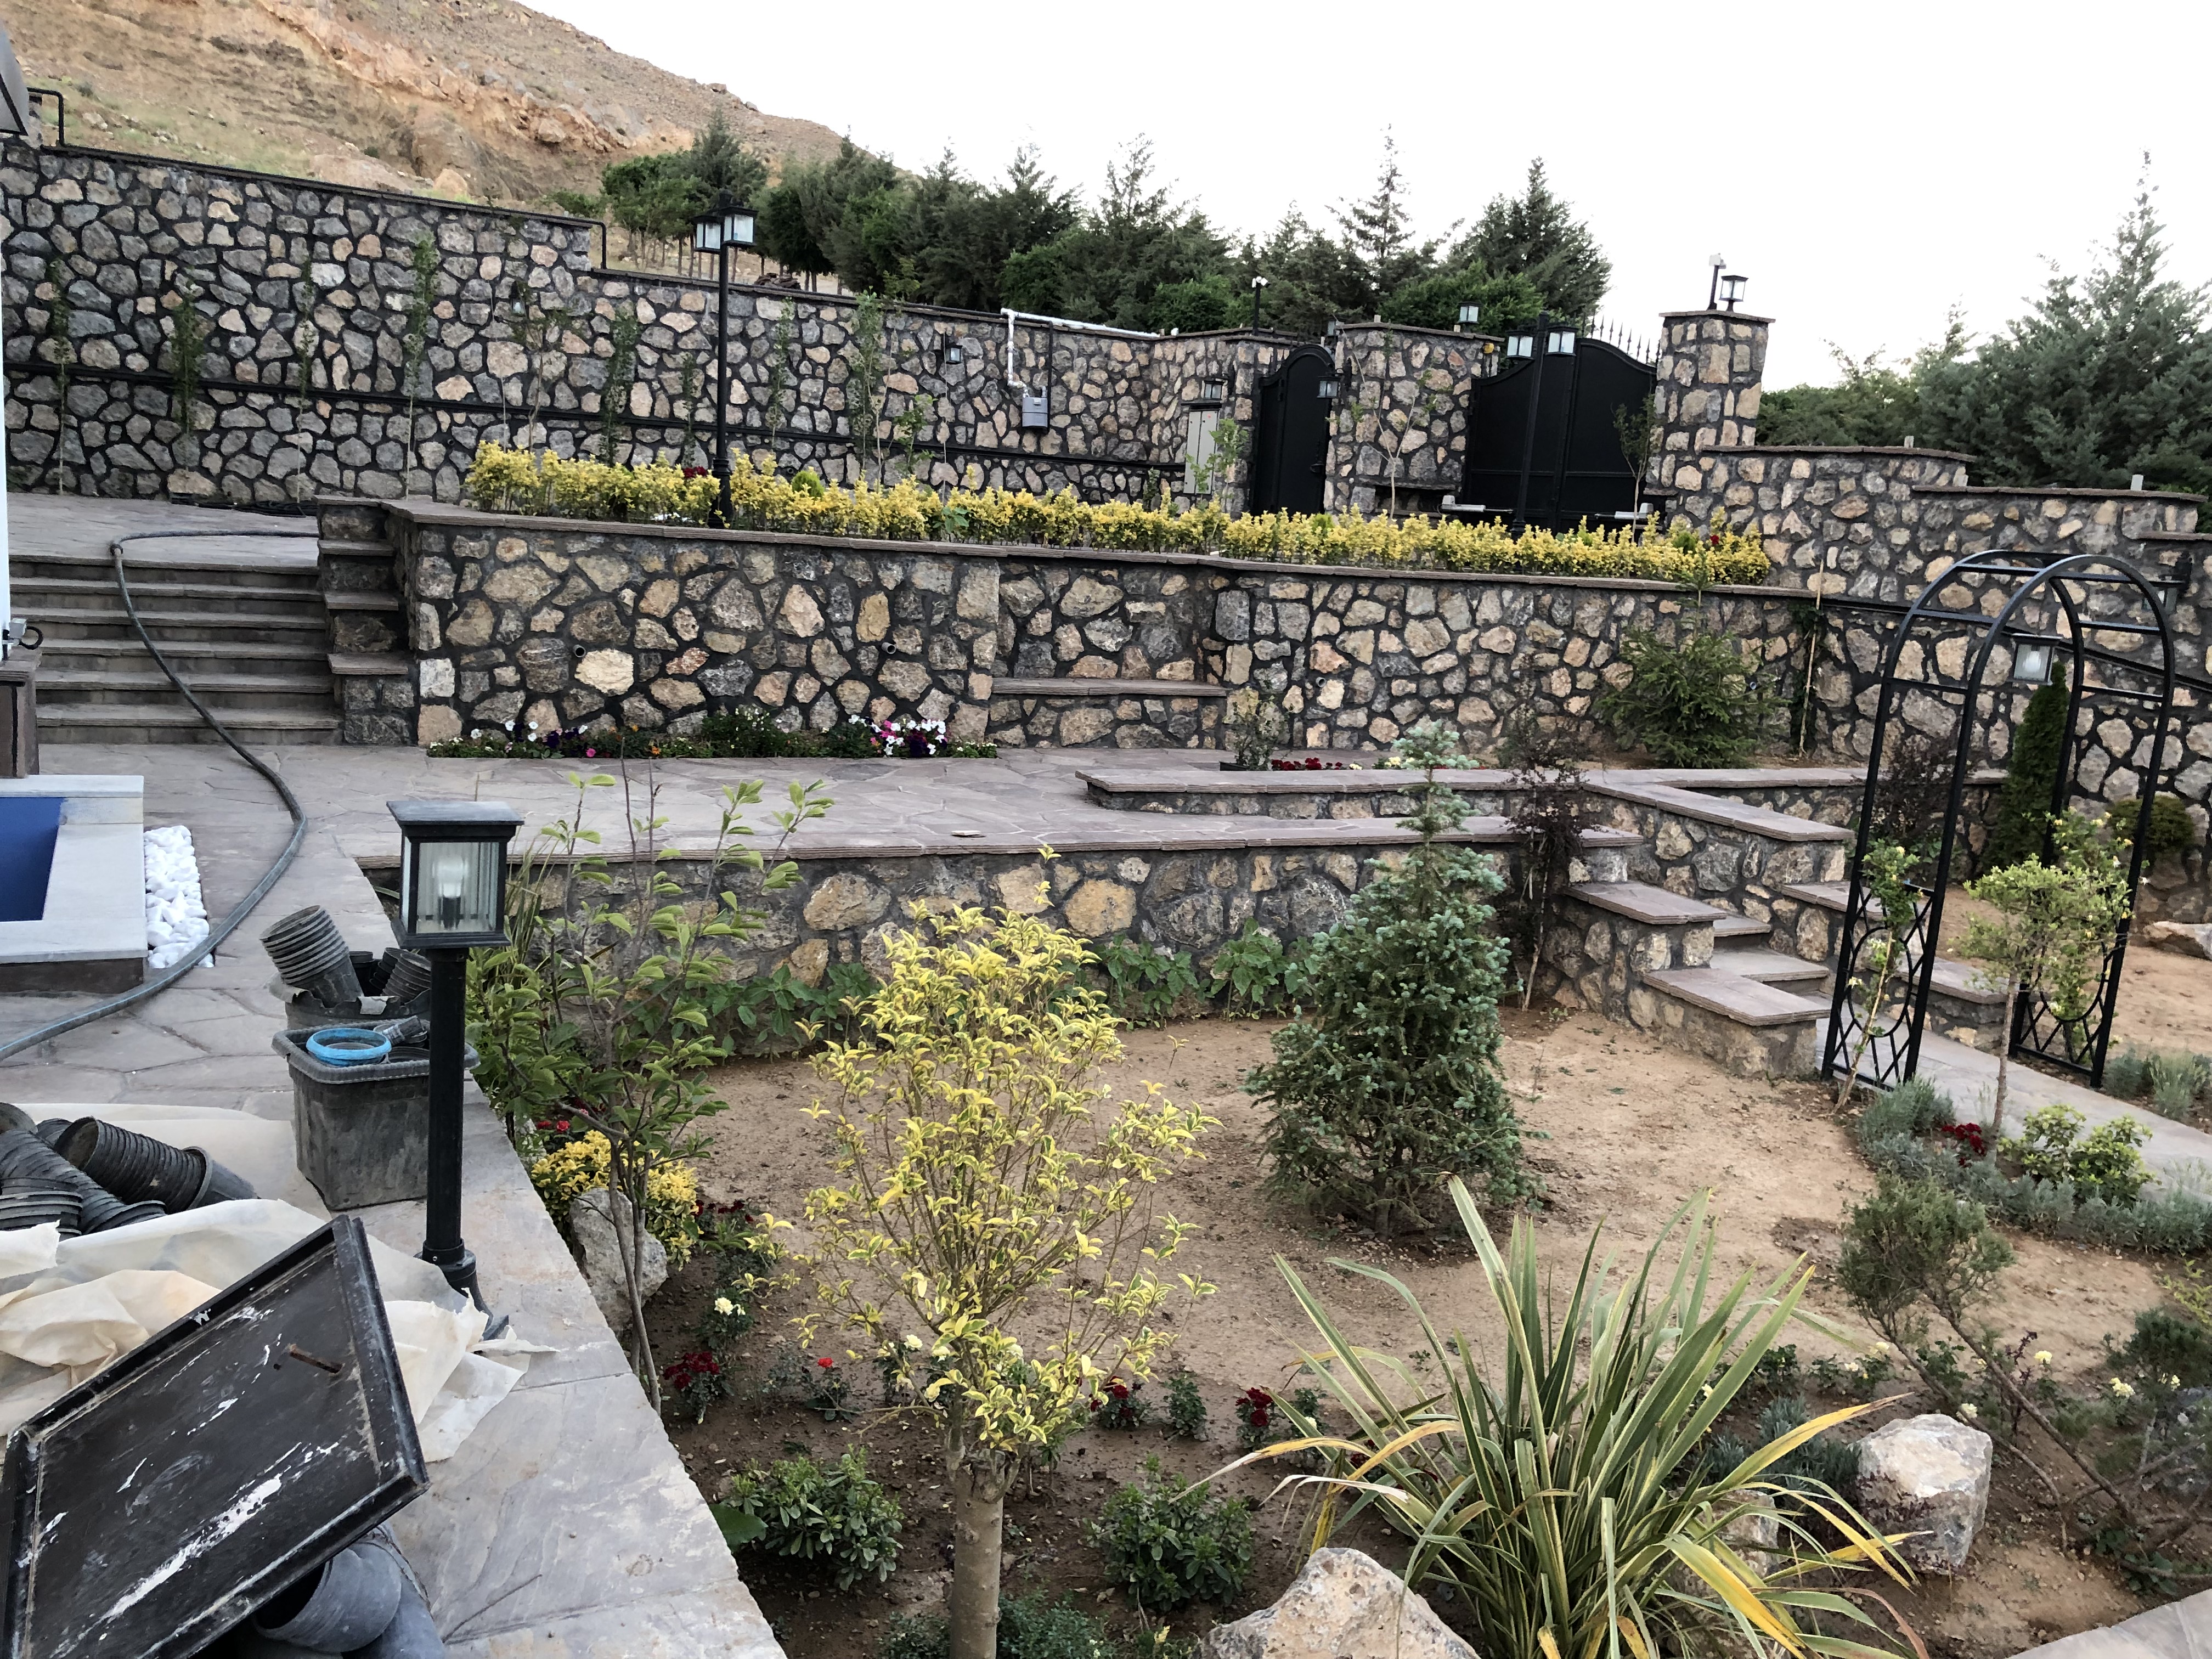 اجرای سنگ مالون و نصب سنگ لاشه مالون برای دیوار های باغ ویلا در دیوار و باغچه های محوطه سازی باغ ویلا  